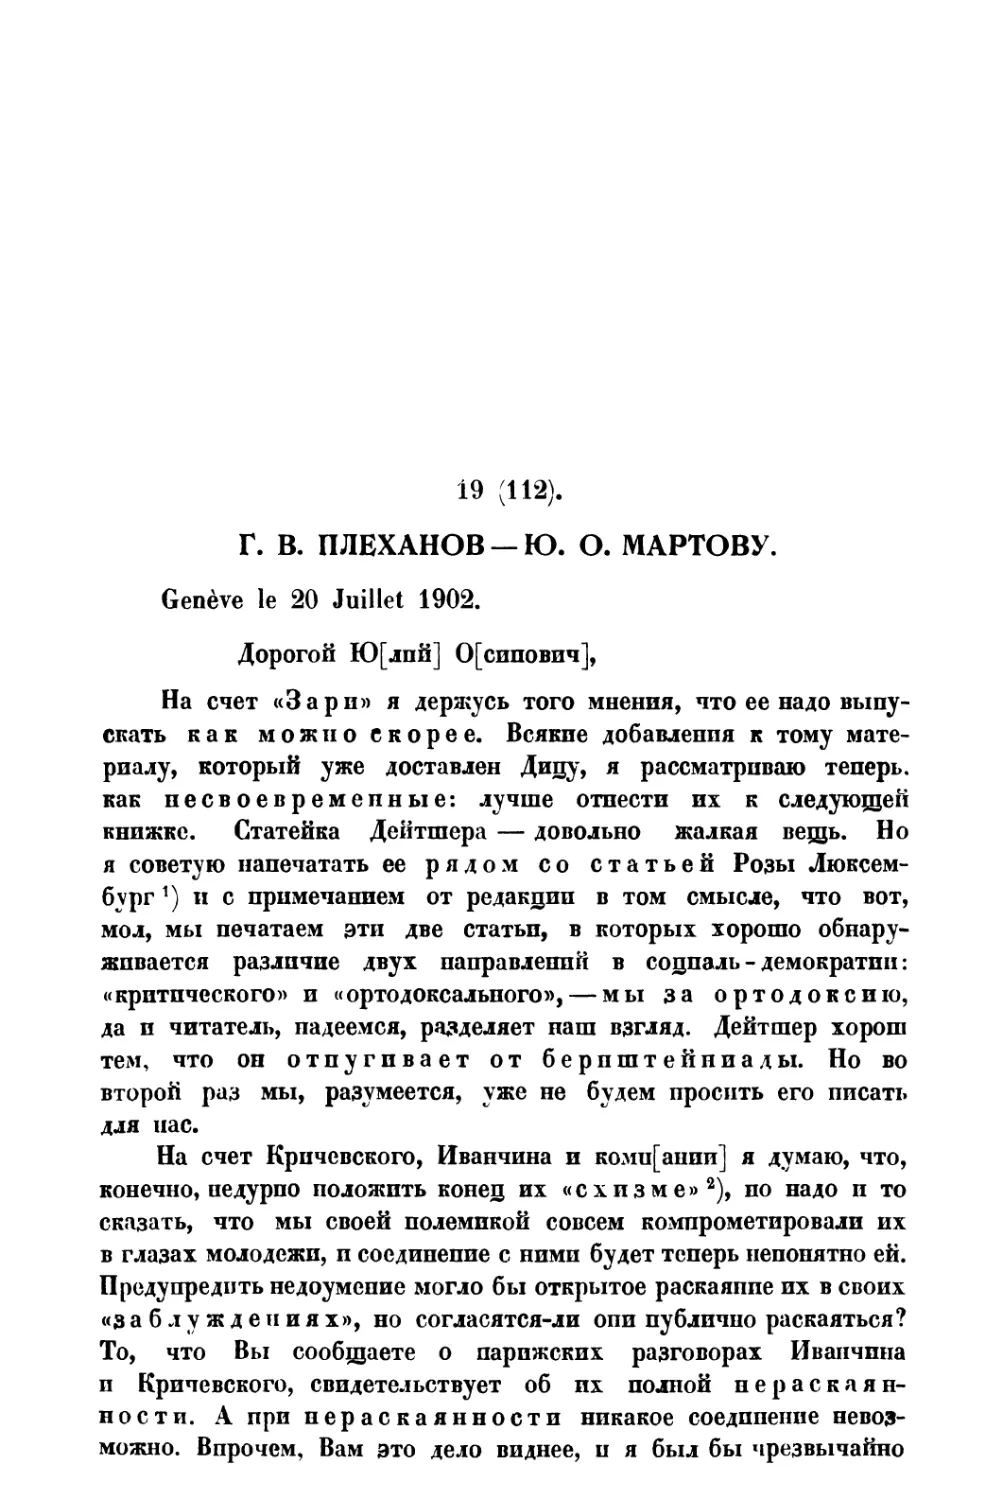 19. Г. В. Плеханов — Ю. О. Мартову от 20 VII 1902 г